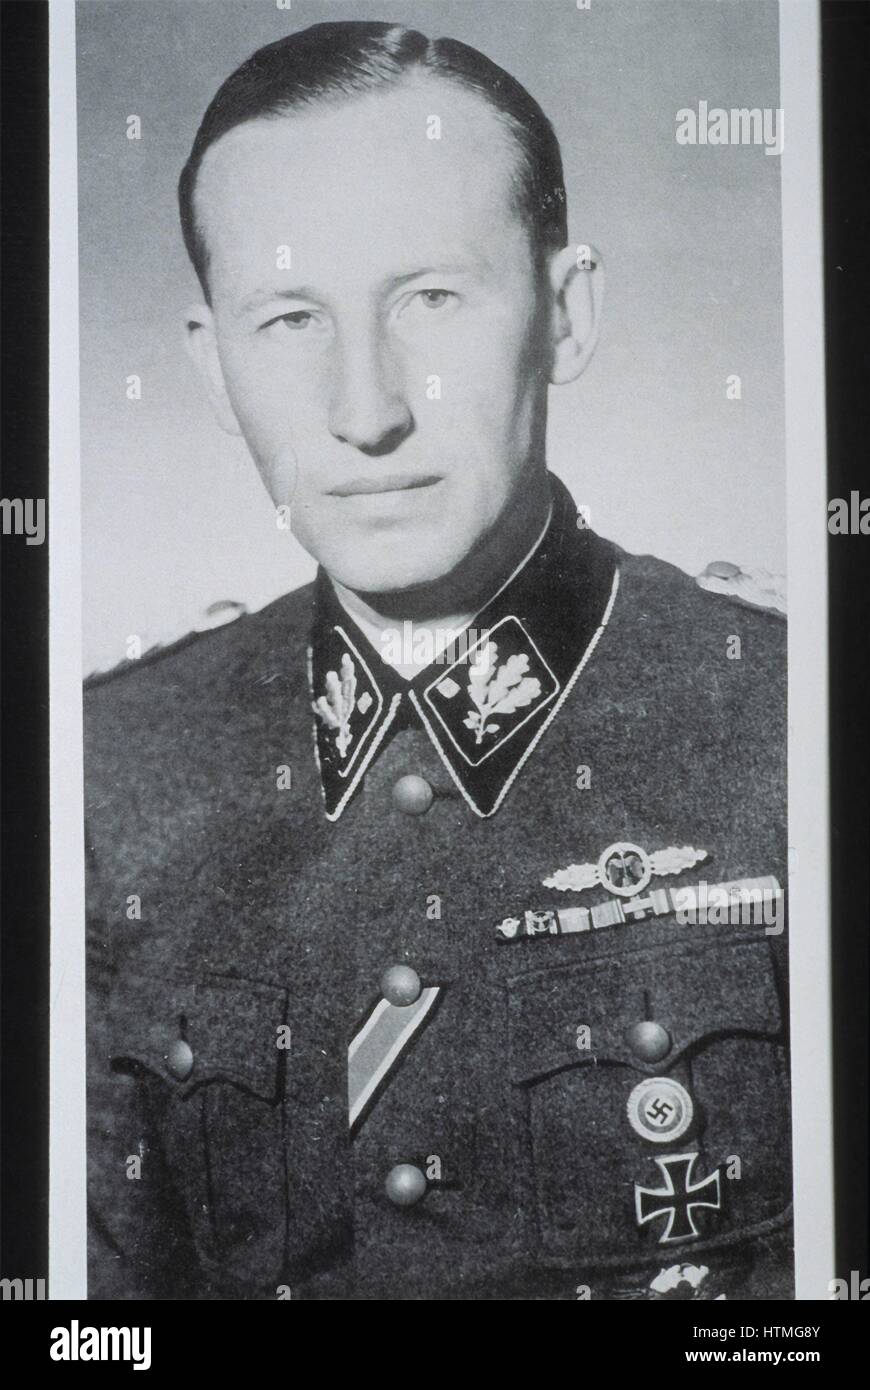 SS-Obergruppenführer Reinhard Heydrich (1904 – 1942), Chef der Reichssicherheitshauptamt (einschließlich der Gestapo, SD und Nazi Polizei Agenturen) und Reichsprotektor (Reichsprotektor) von Böhmen und Mähren. Heydrich unter dem Vorsitz der Wannsee-Konferenz 1942, wh Stockfoto